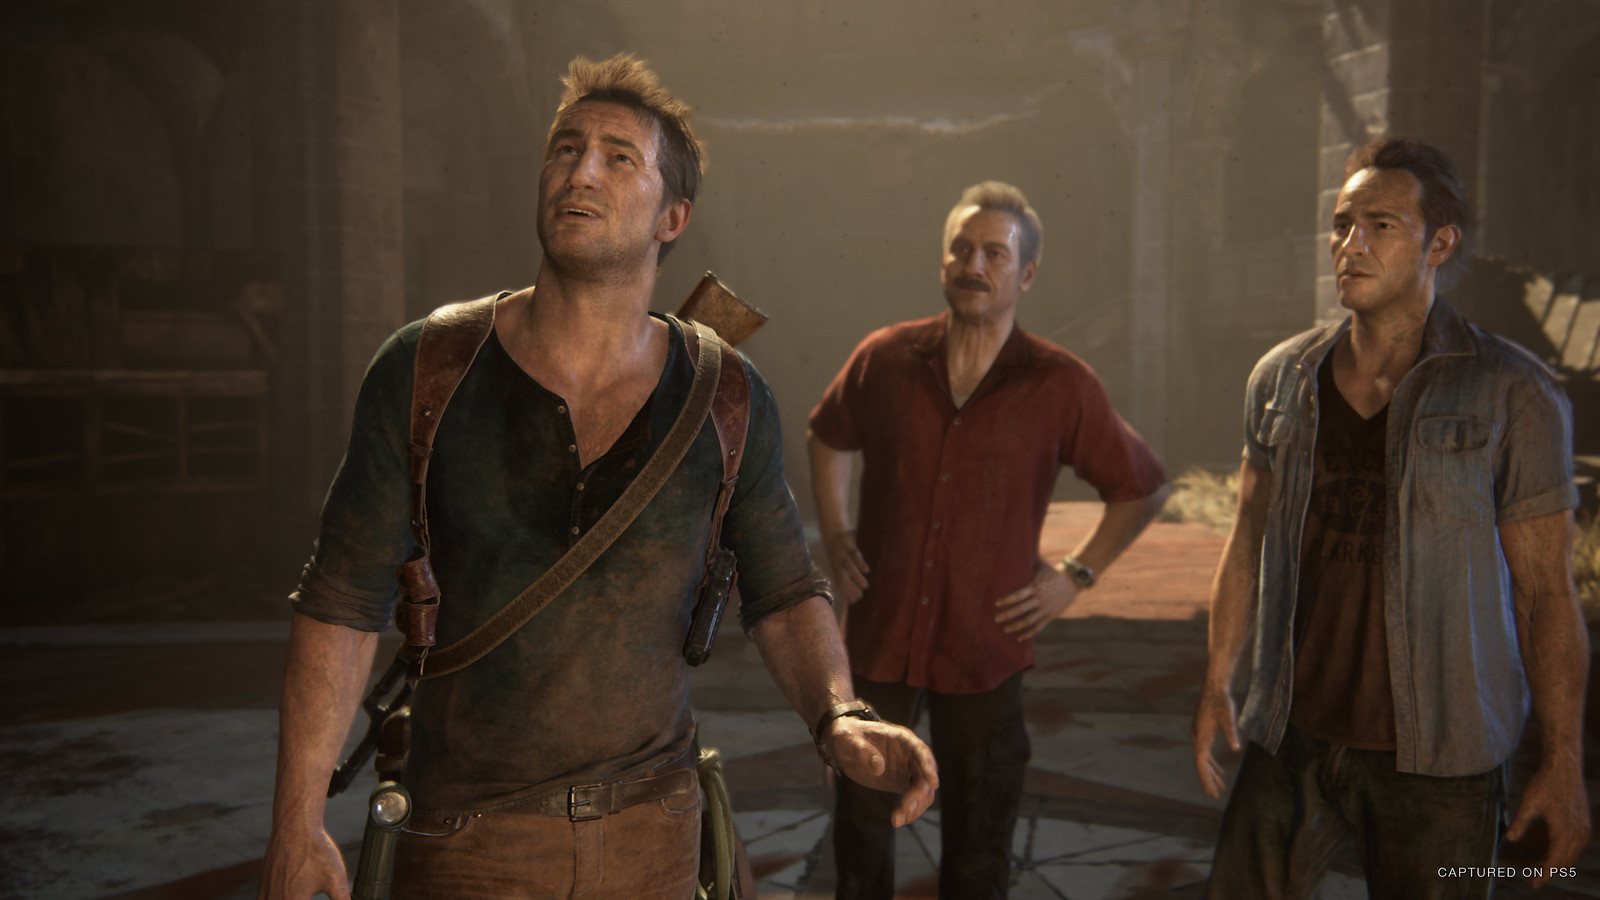 Uncharted 4: A Thief's End com novas imagens